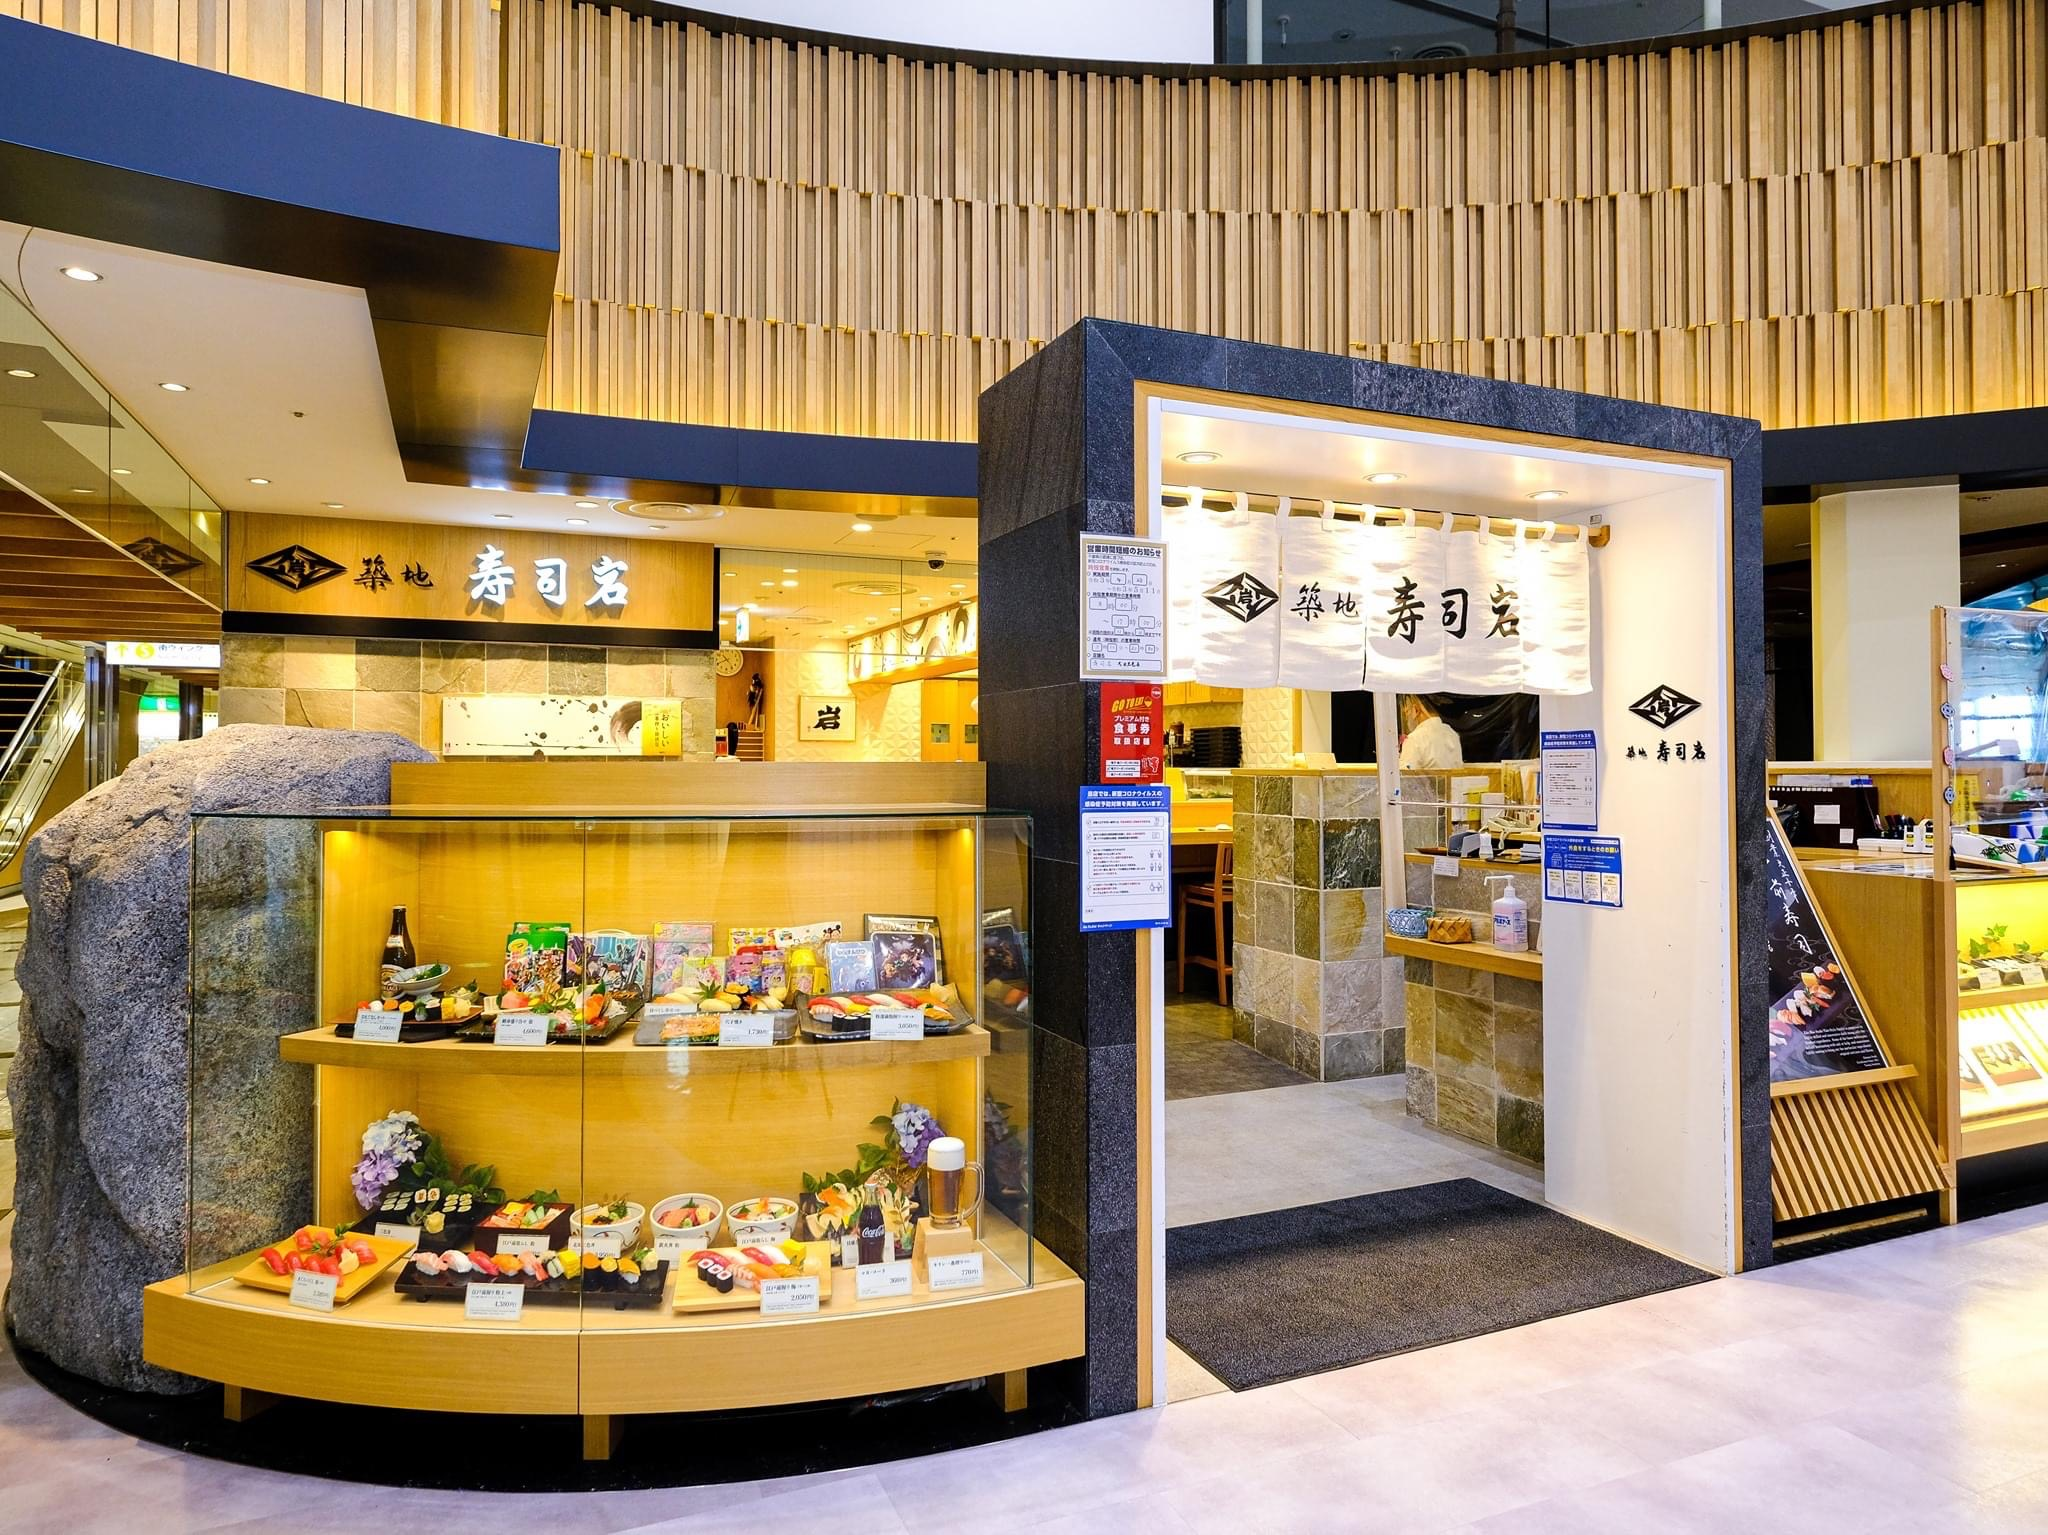 筑地 寿司岩的店铺照片